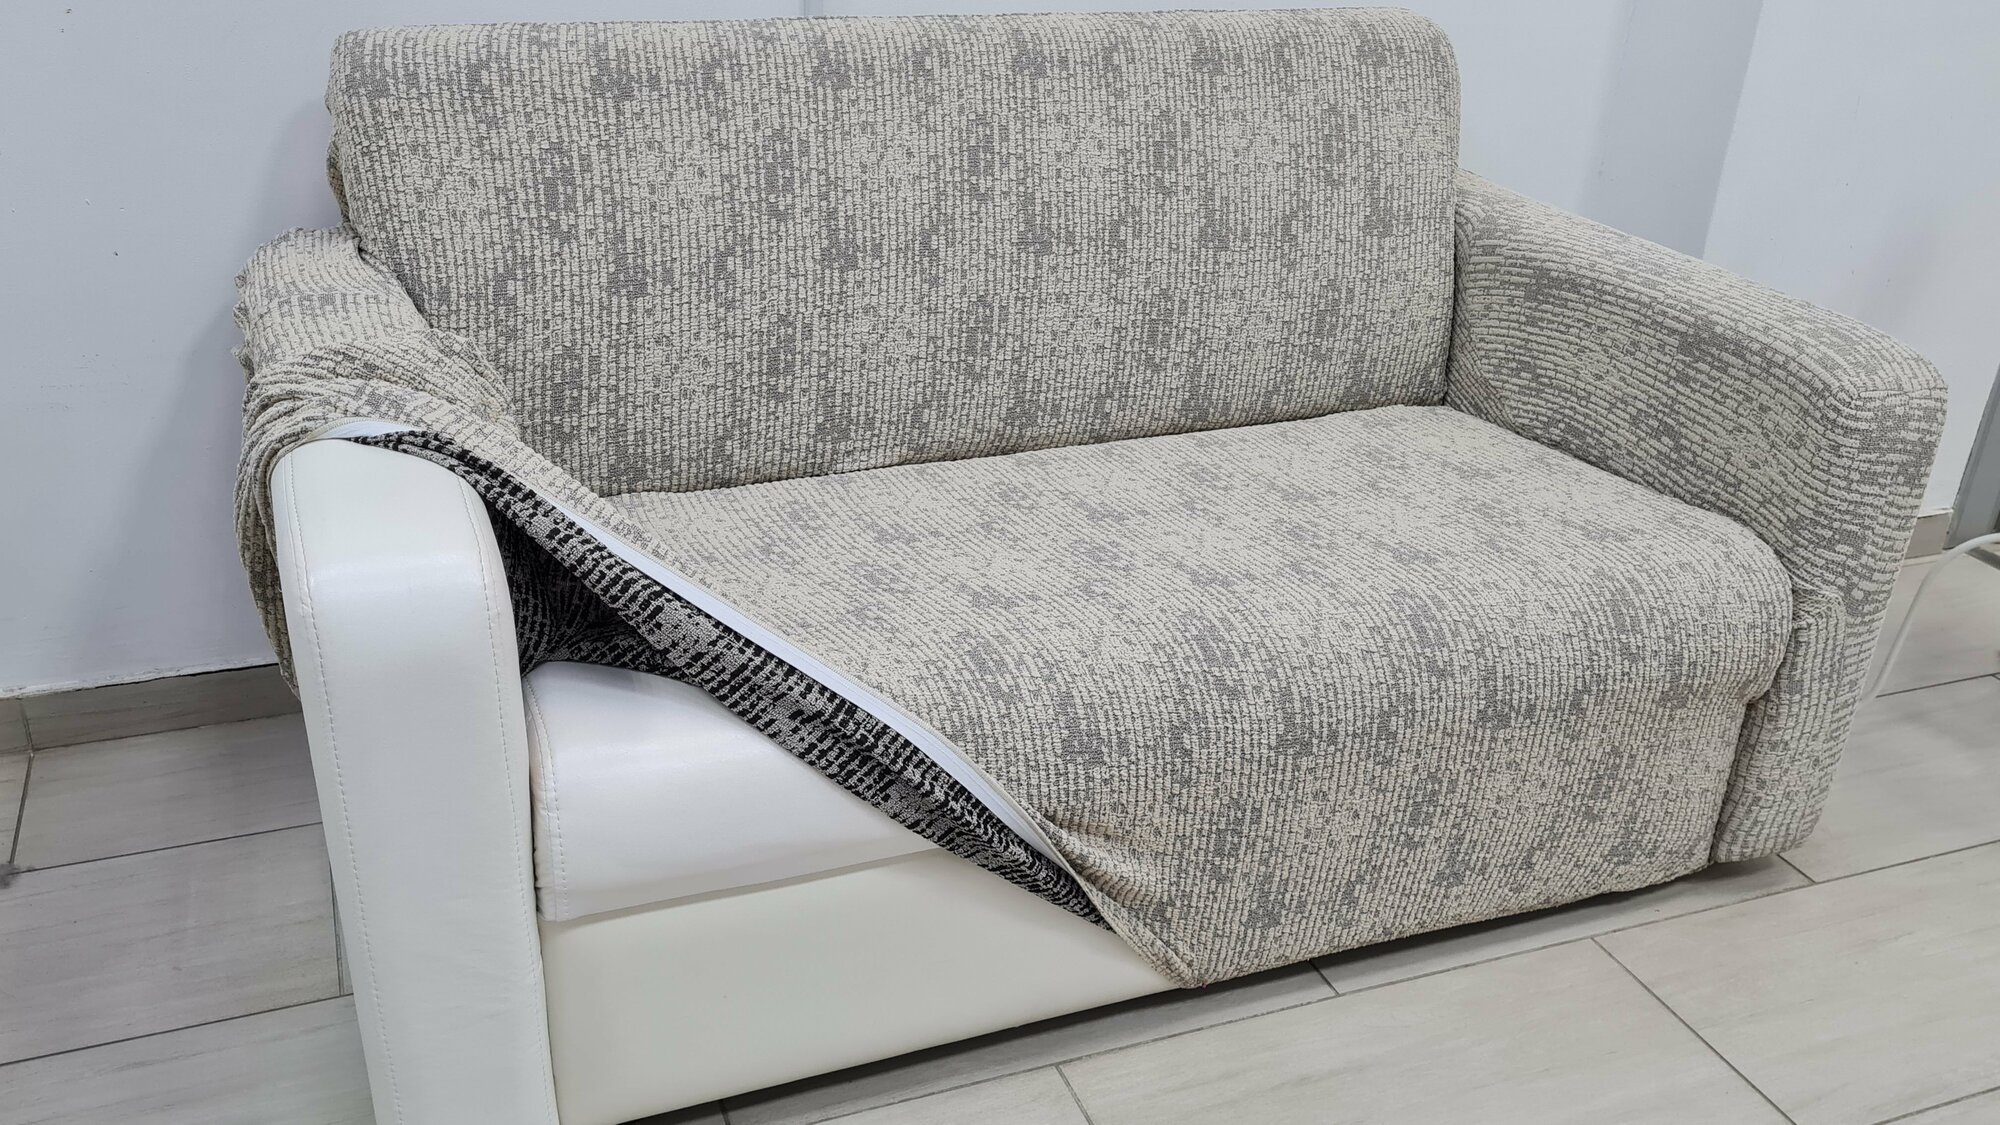 Чехол универсальный Жаккард мрамор серый на 3-х местный диван на резинке